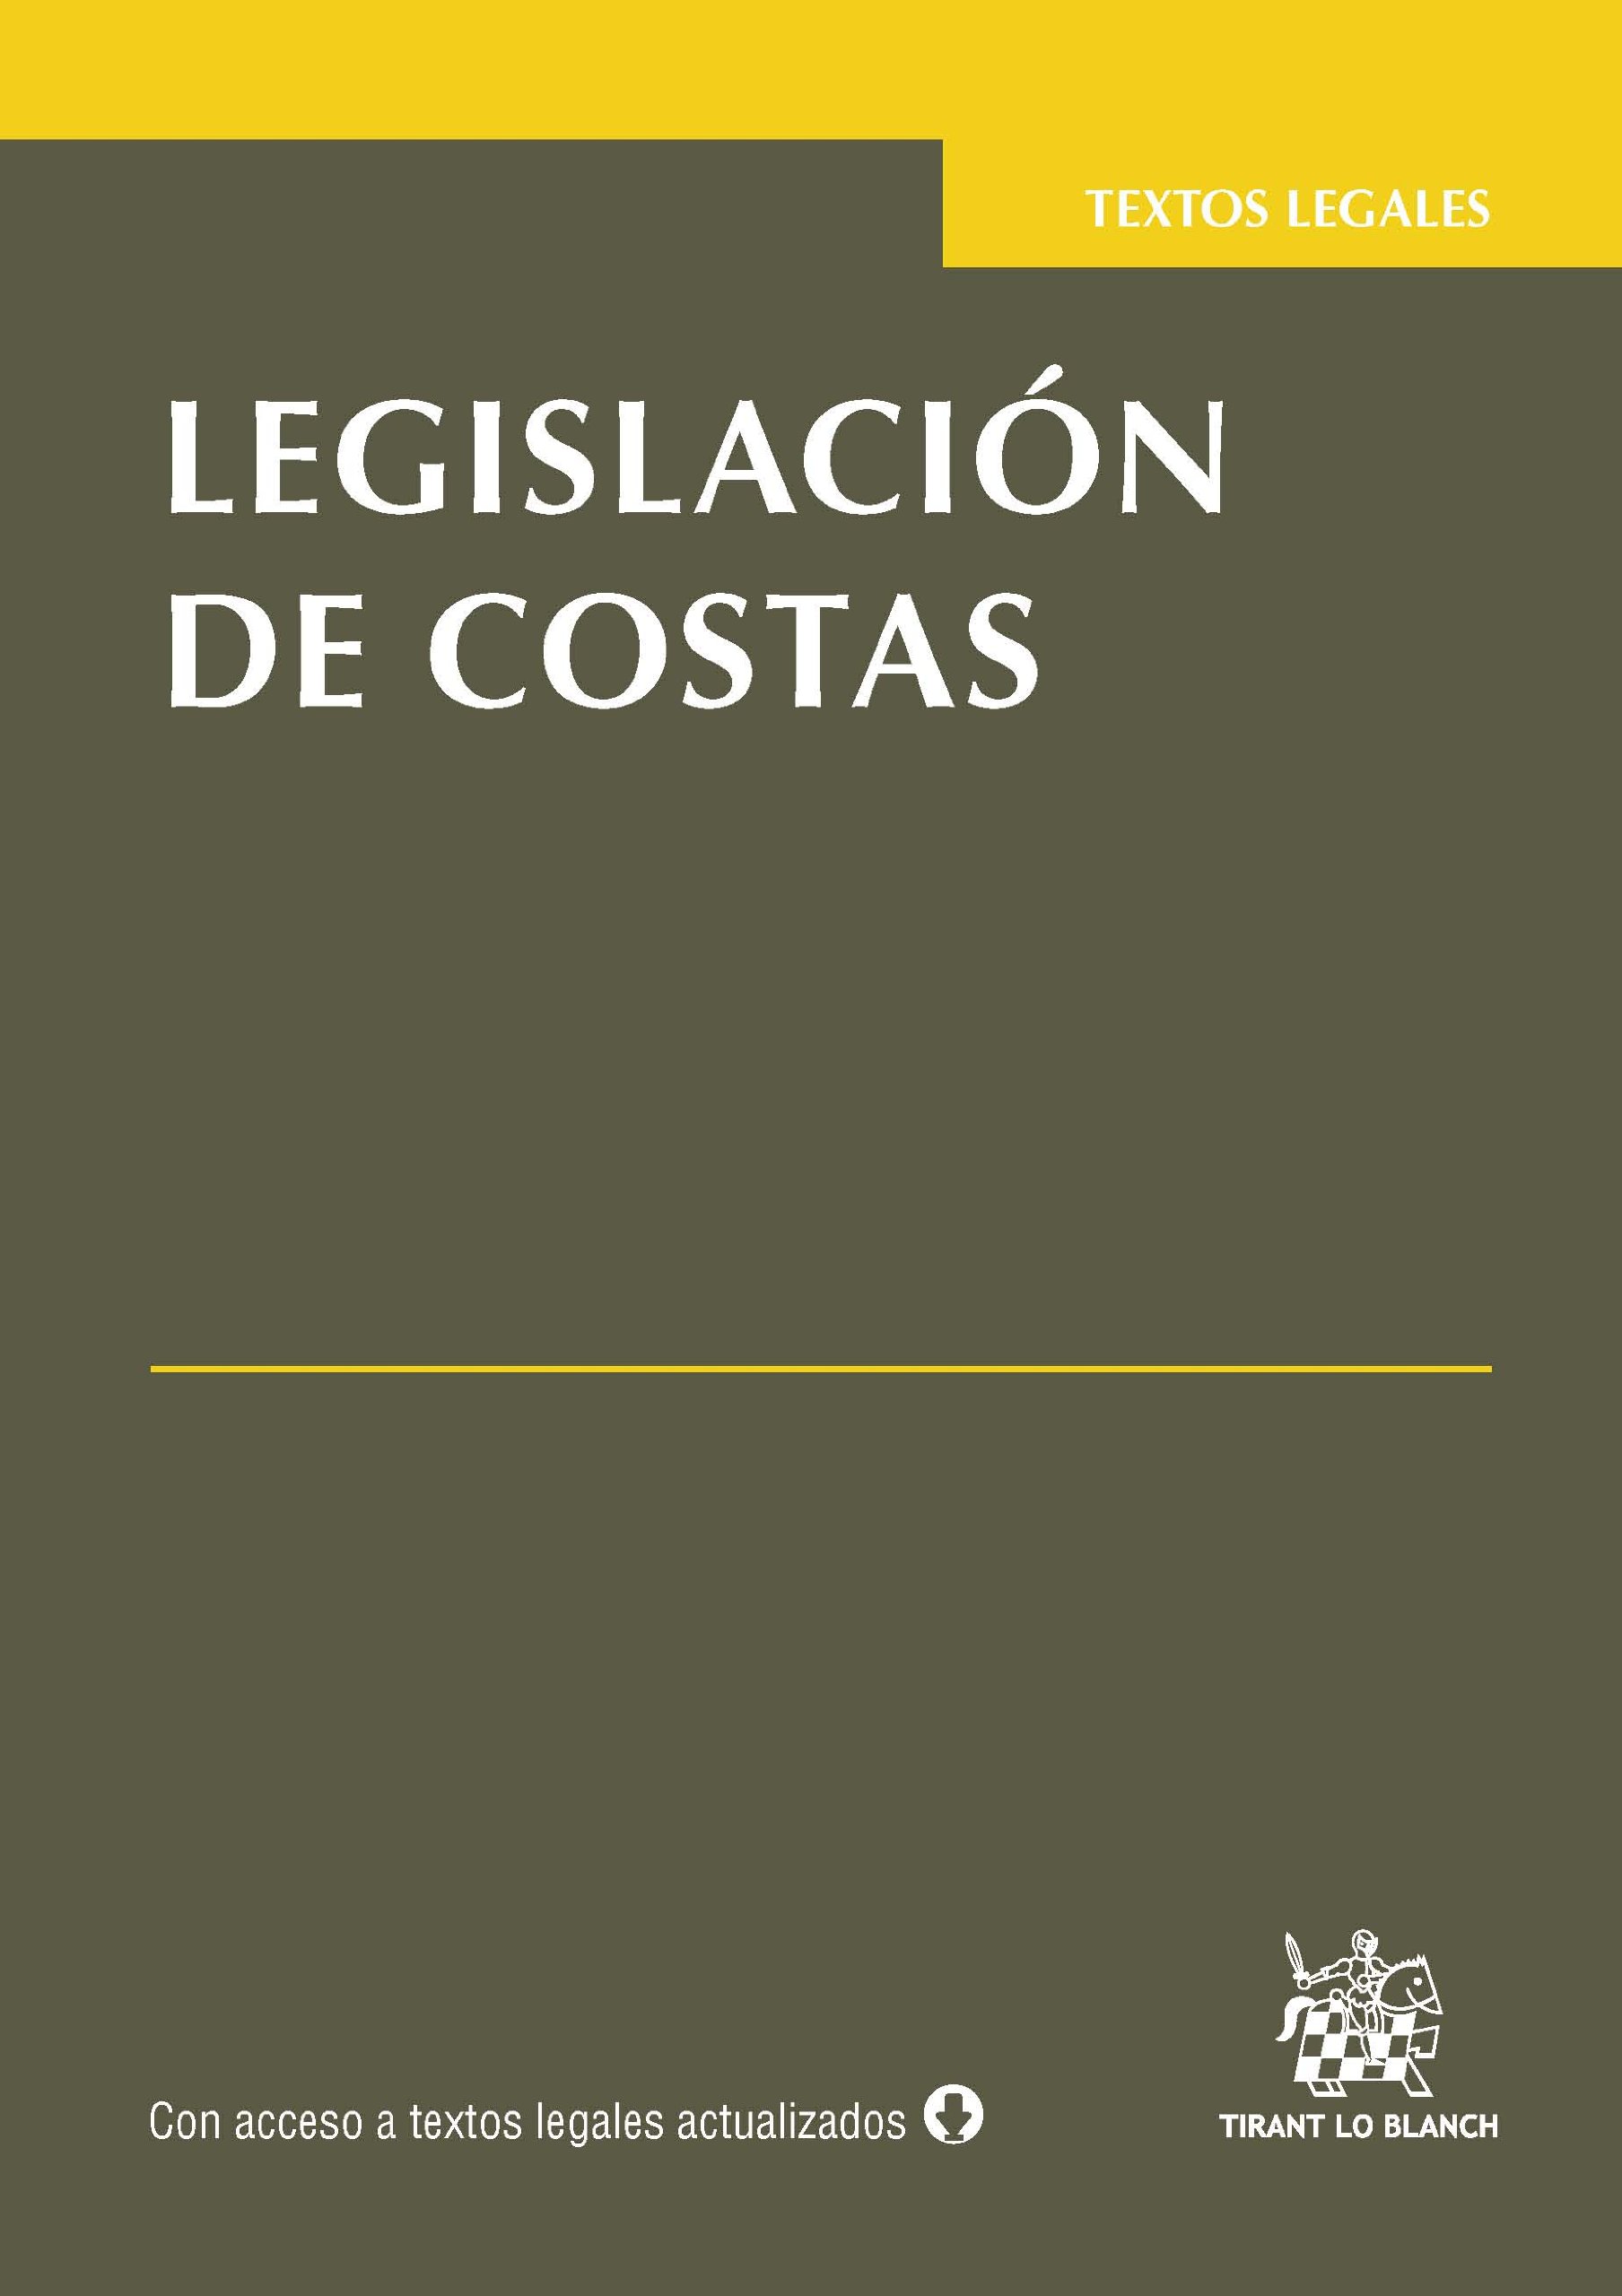 LEGISLACIÓN DE COSTAS TEXTOS LEGALES TIRANT LO BLANCH